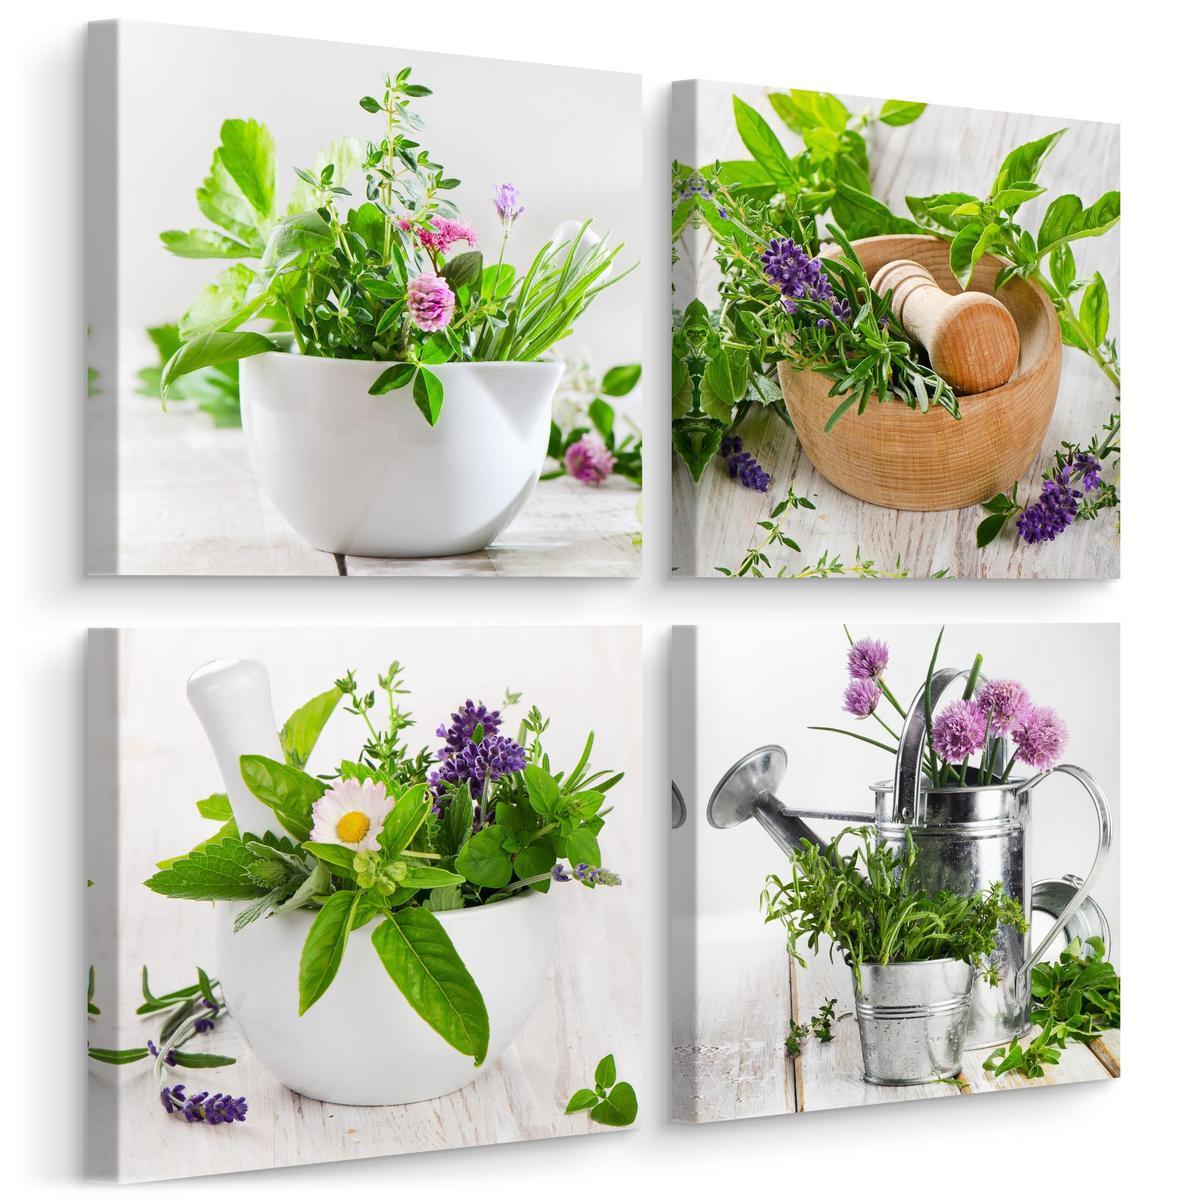 Obrazy Do Kuchni SET Świeże ZIOŁA Przyprawy Rośliny Natura Kwiaty 60x60cm nr. 1